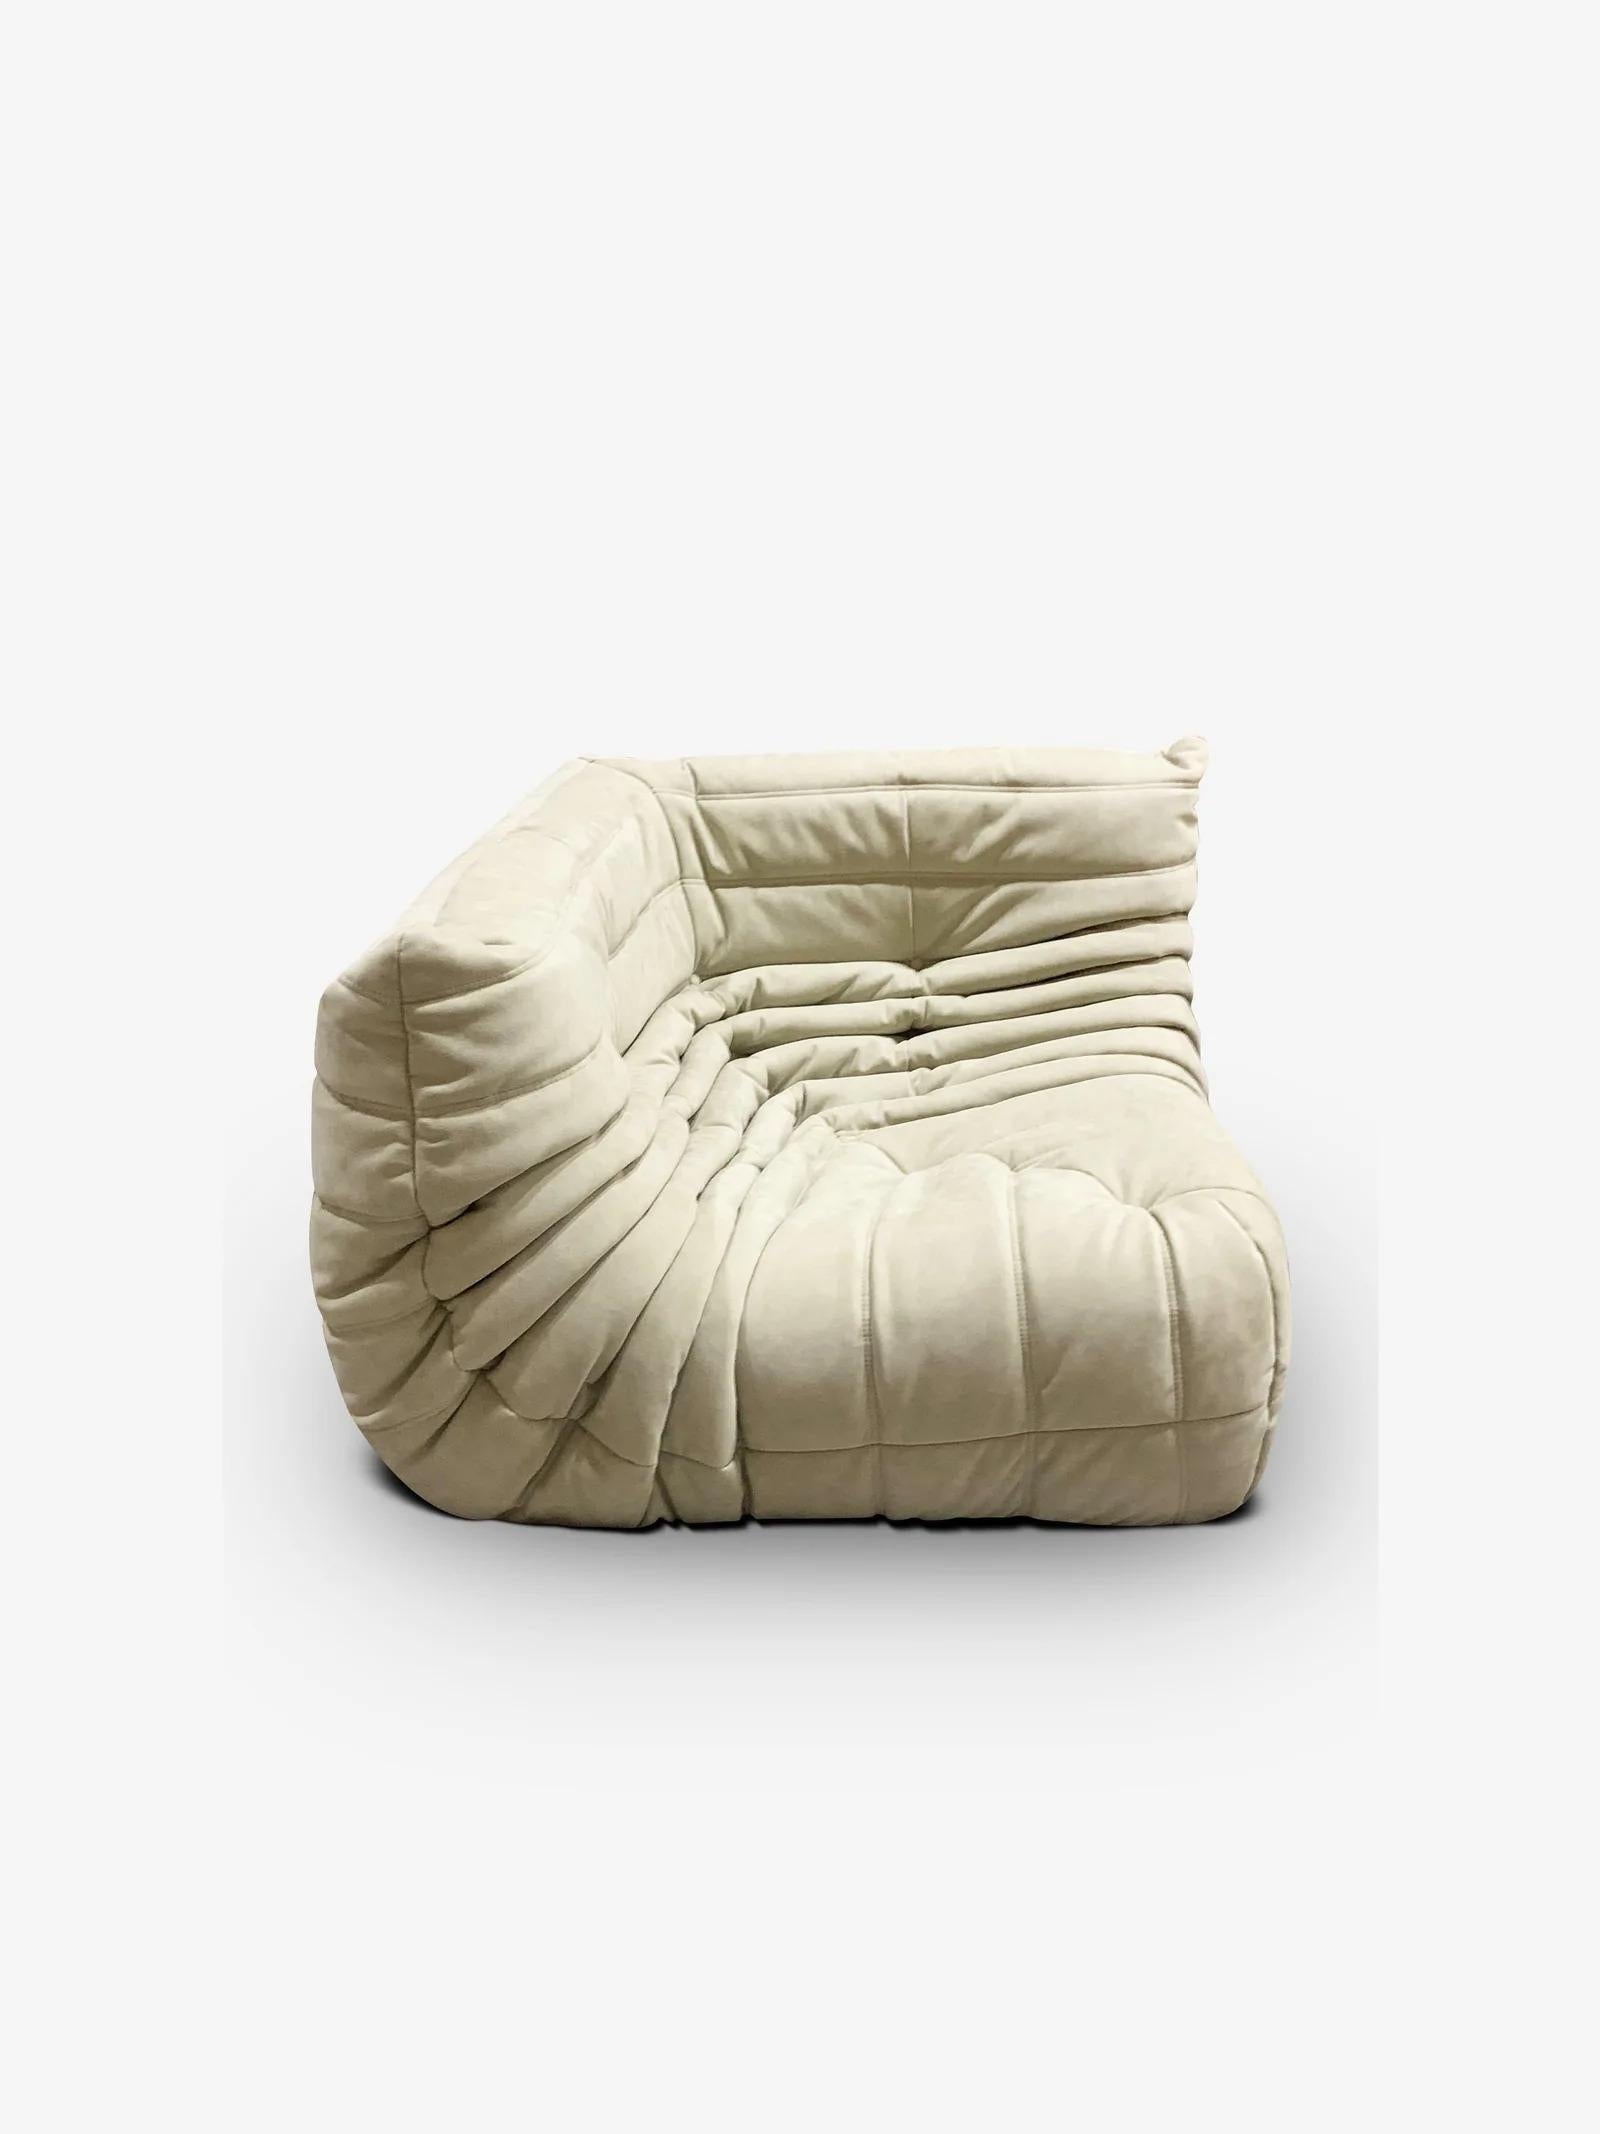 Contemporary Togo 3 Piece Sectional Sofa For Sale